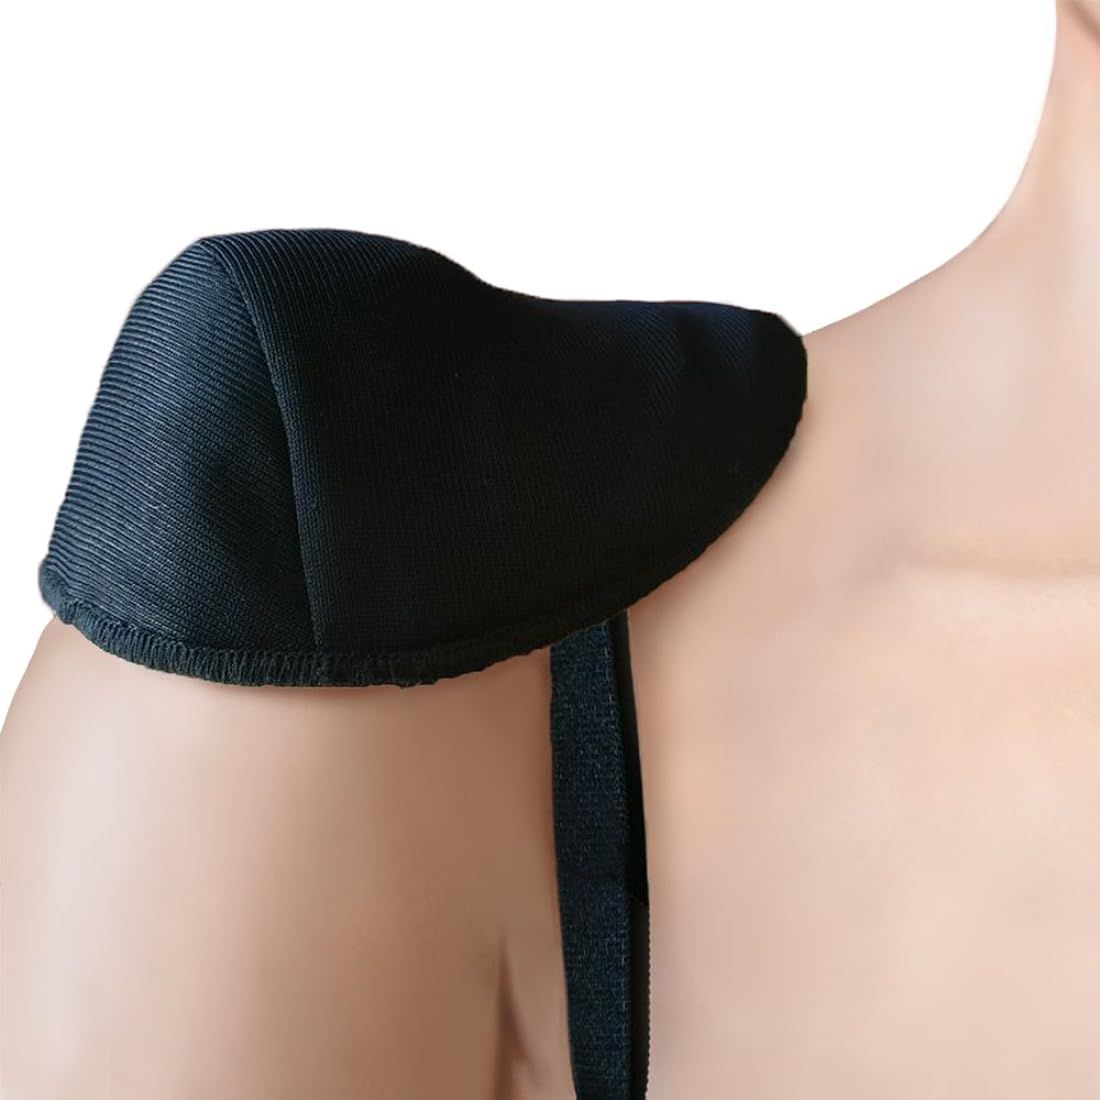 Ann West Bubble Raglan Shoulder Pads Style SPR5510 - Black | Amazon (US)